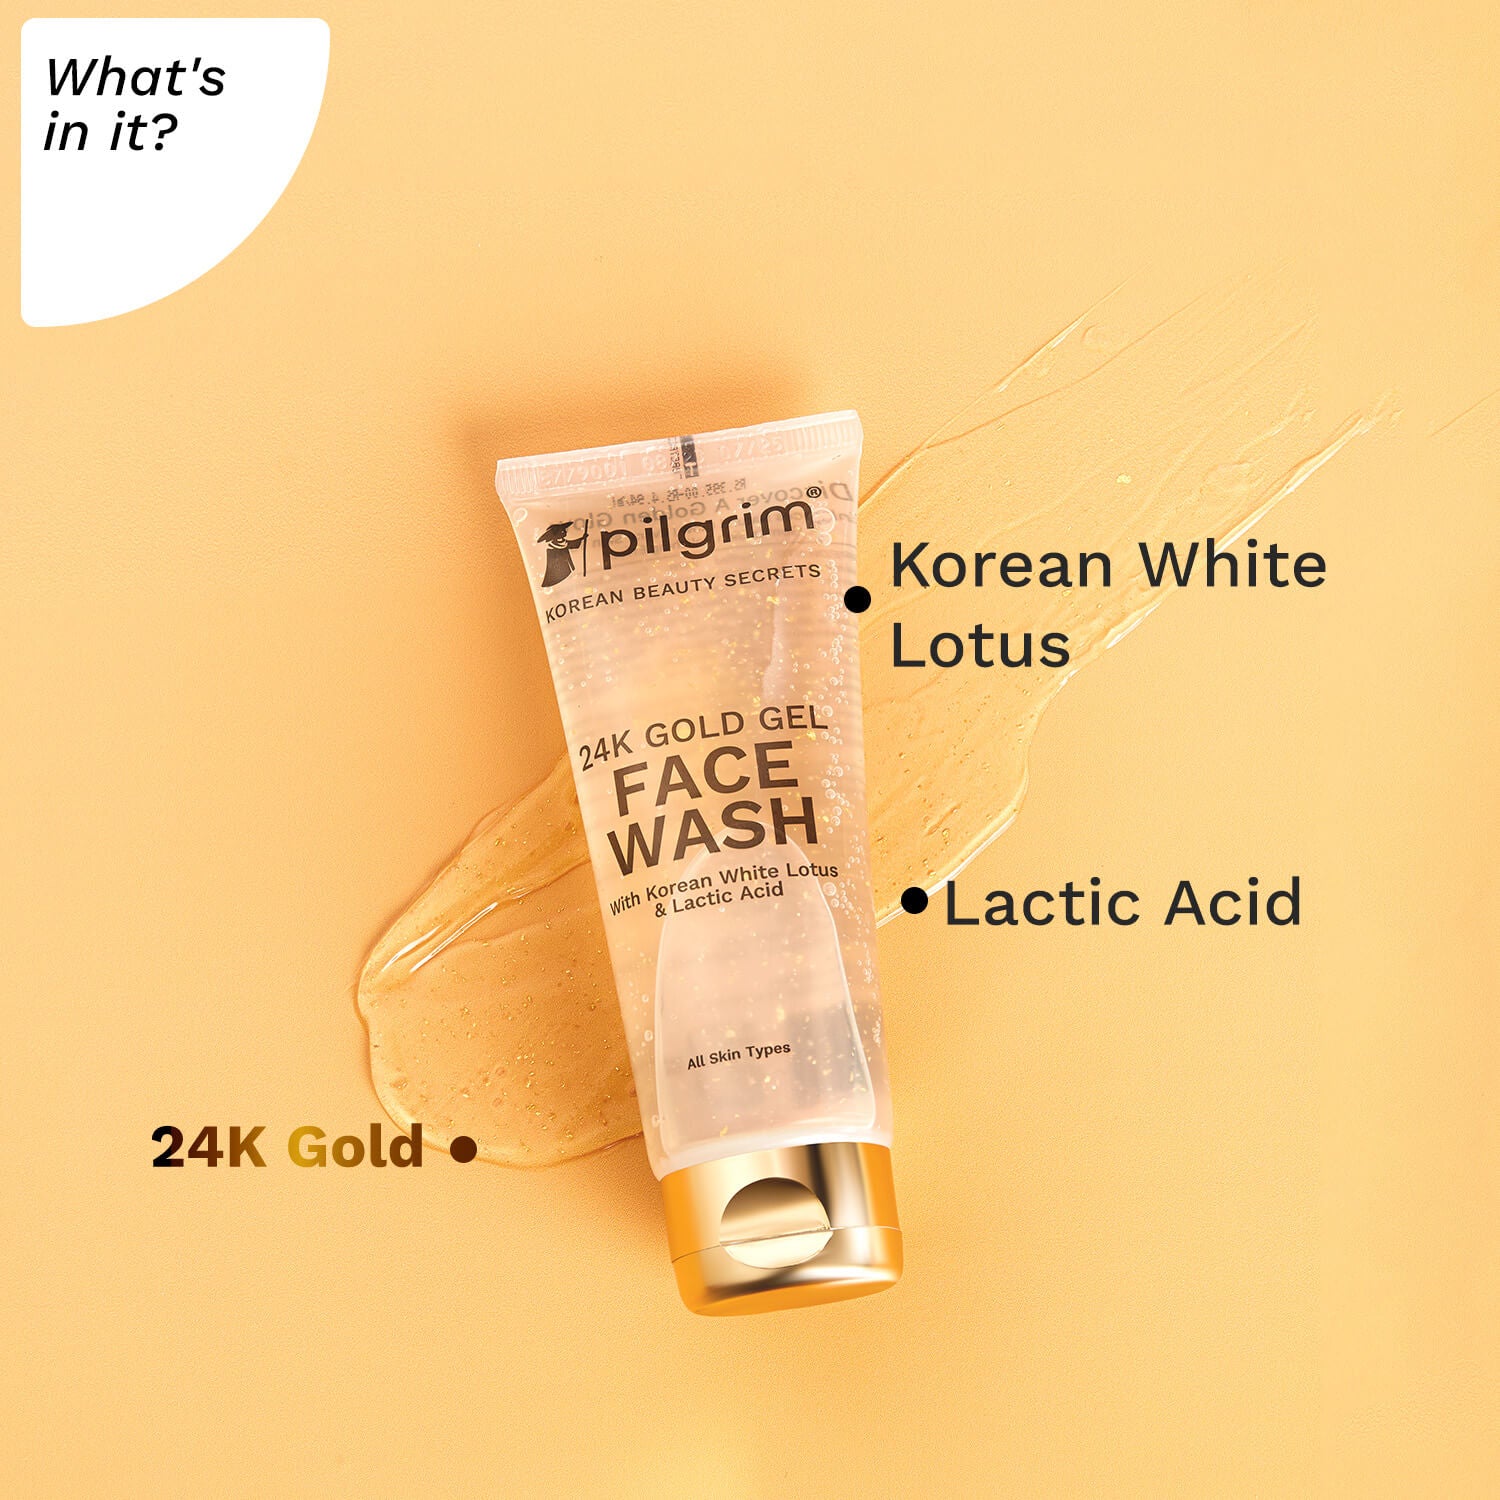 24K Gold Gel Face Wash